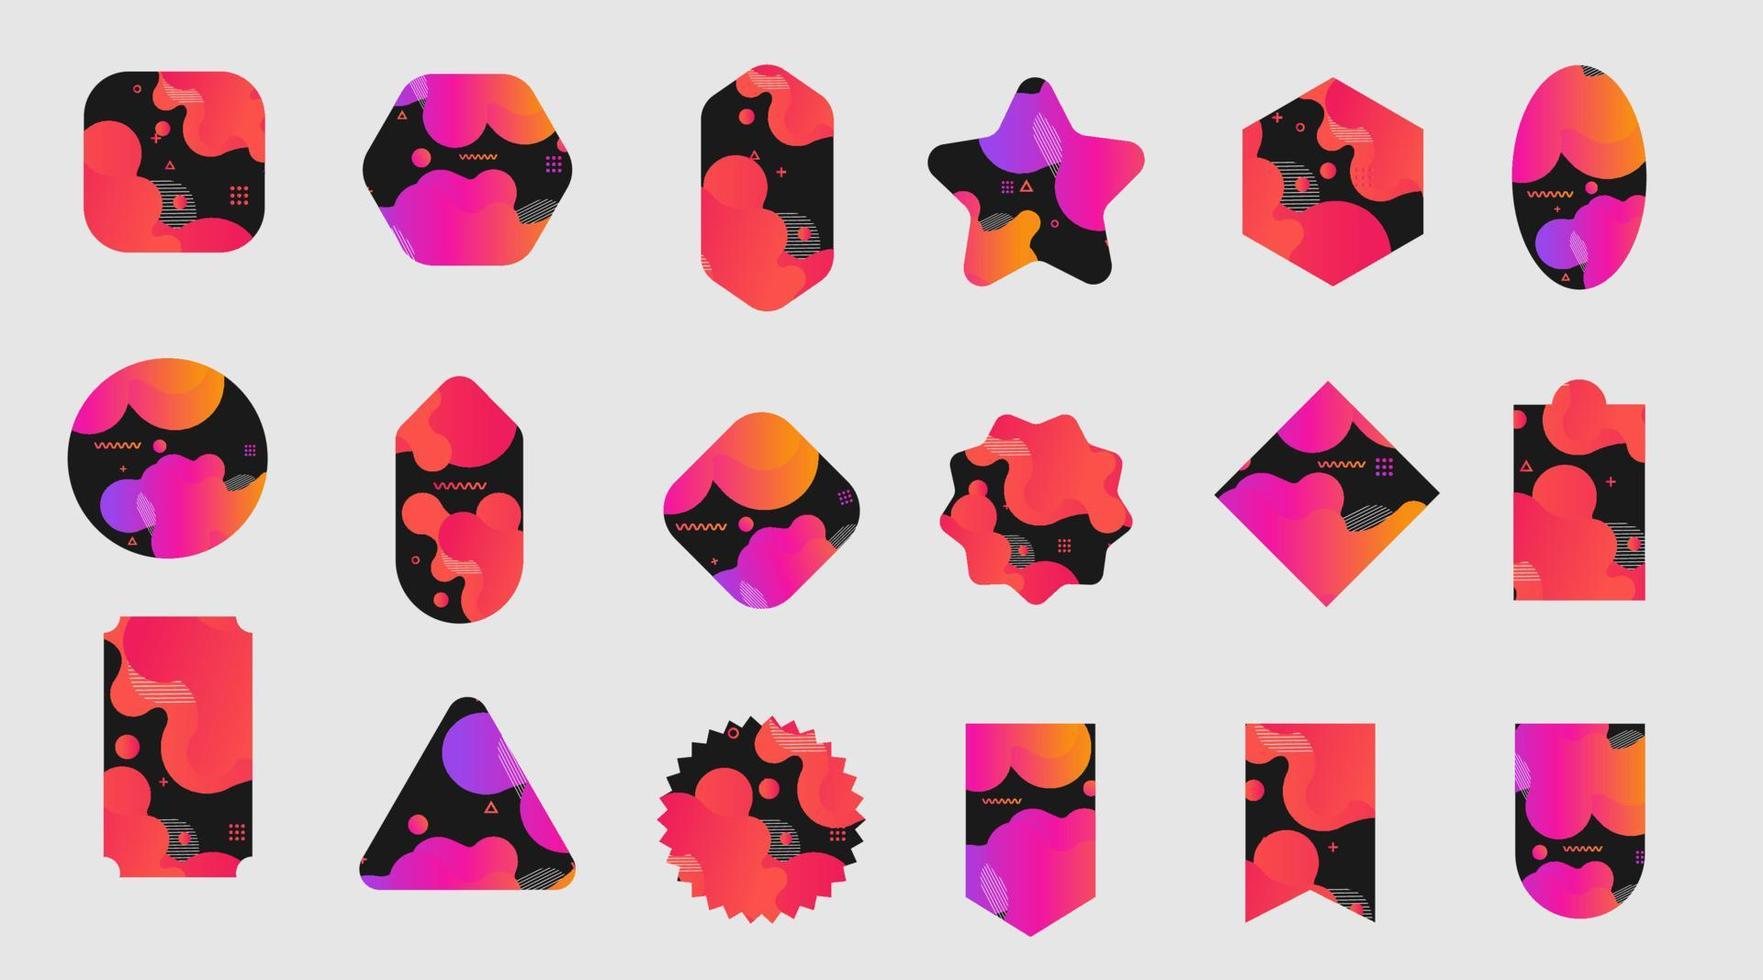 diseño de fondo de formas líquidas abstractas con un conjunto de etiquetas de etiquetas, plantilla de diseño plano moderno de ilustración vectorial vector